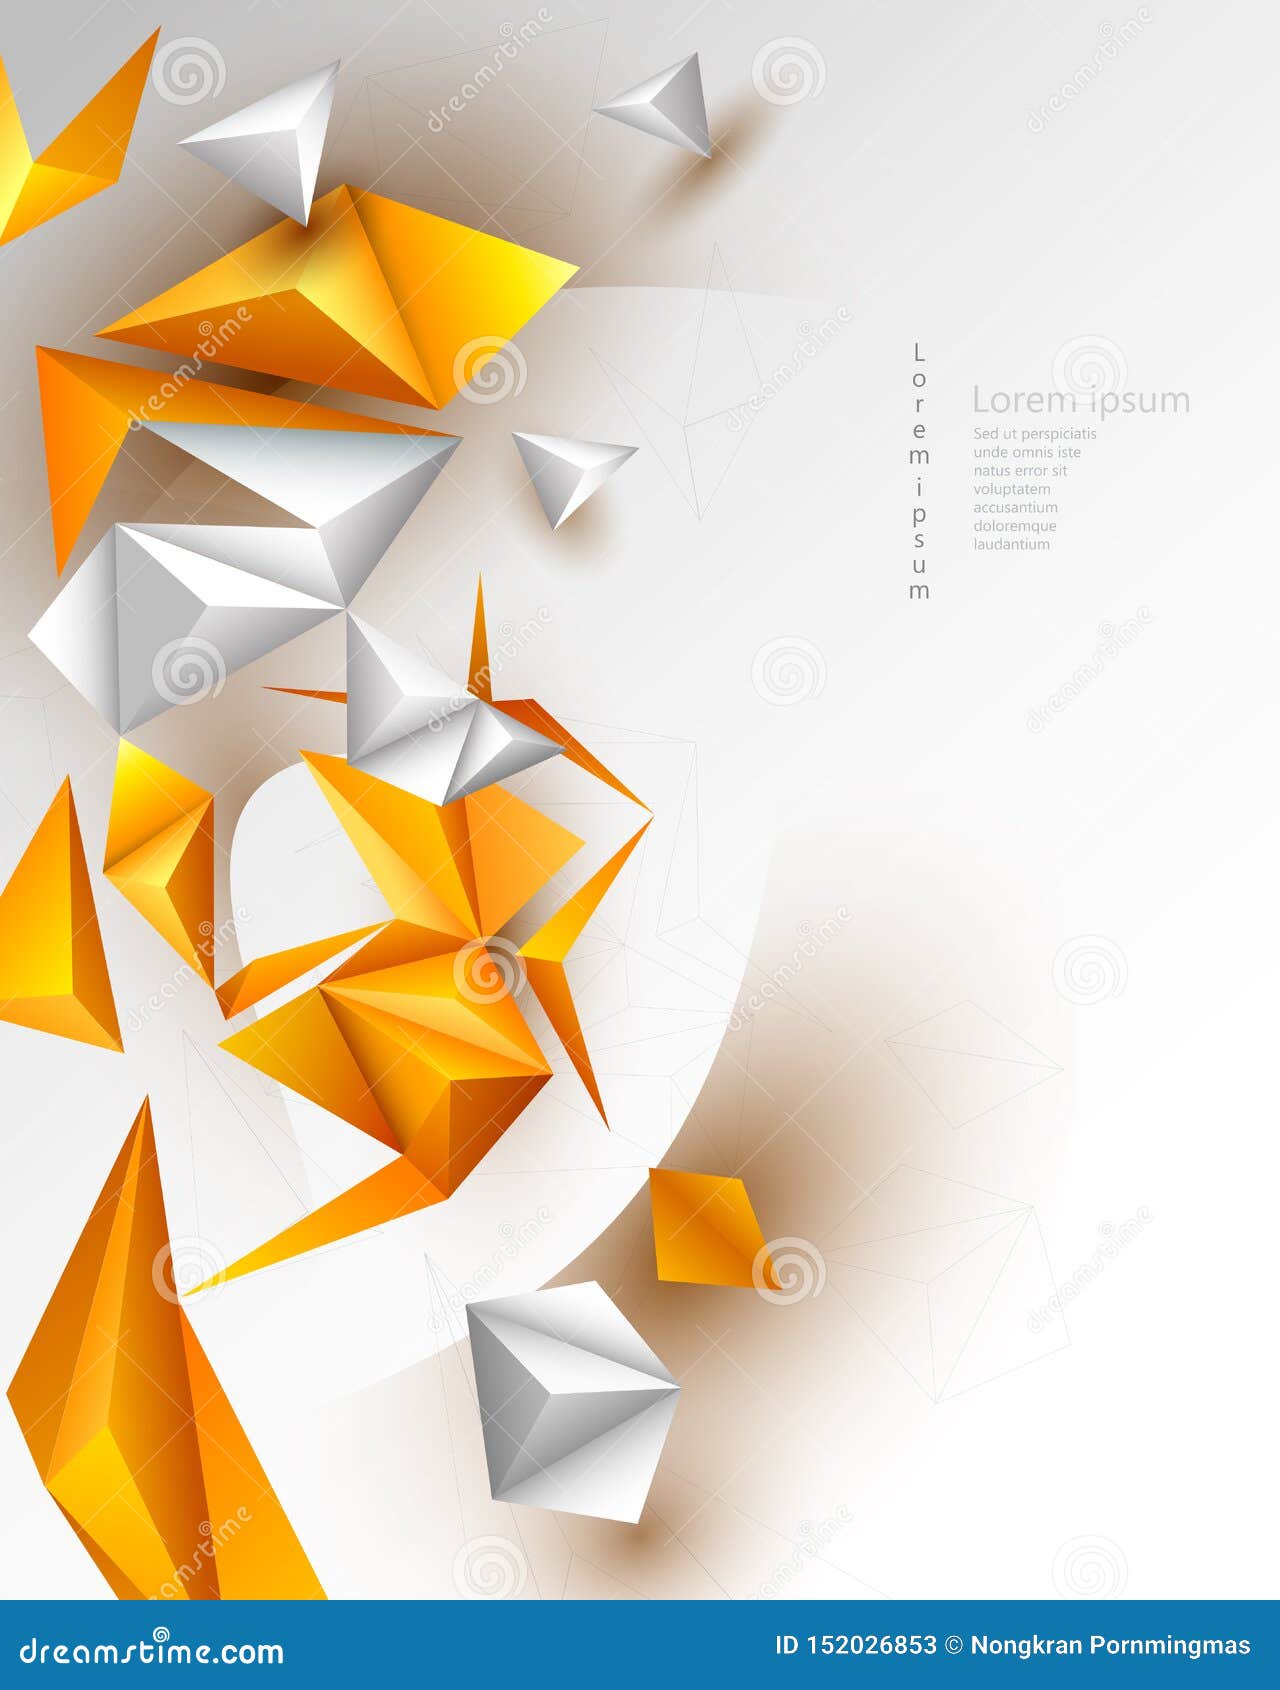 Để khơi gợi trí tưởng tượng của bạn, chúng tôi giới thiệu hình học trừu tượng 3D đa giác màu gradient vàng cam. Chắc chắn bạn sẽ cảm thấy kỳ diệu và thích thú khi xem nó!